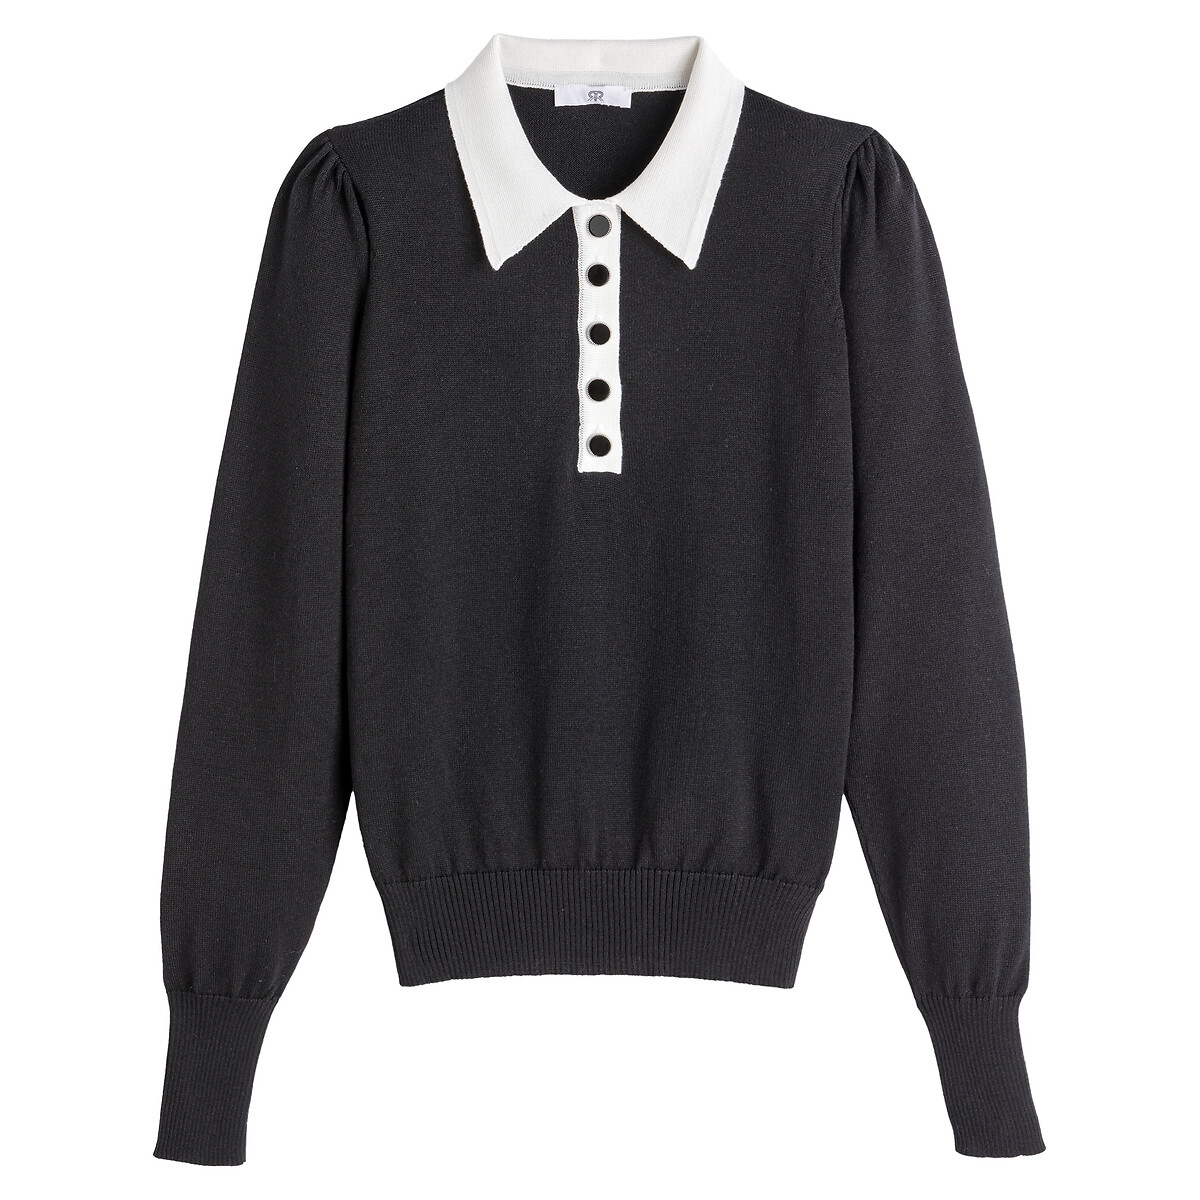 Пуловер LaRedoute С воротником-поло двухцветный декоративные пуговицы M черный, размер M - фото 5